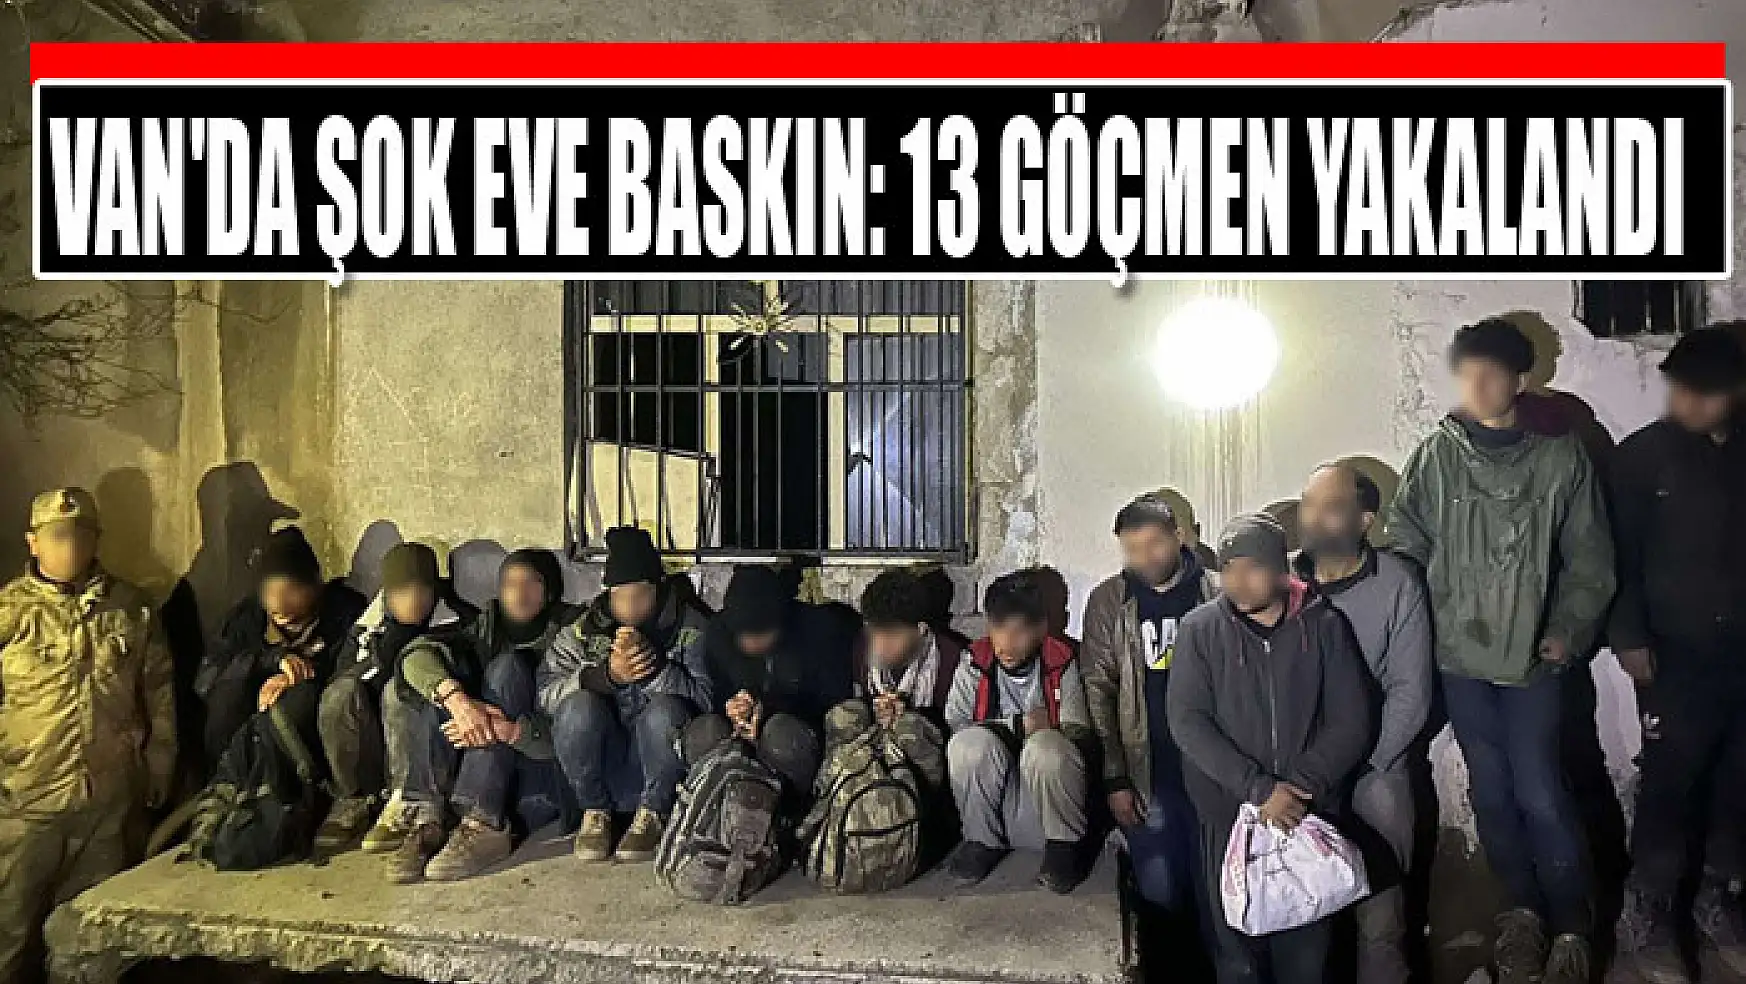 Van'da şok eve baskın: 13 göçmen yakalandı